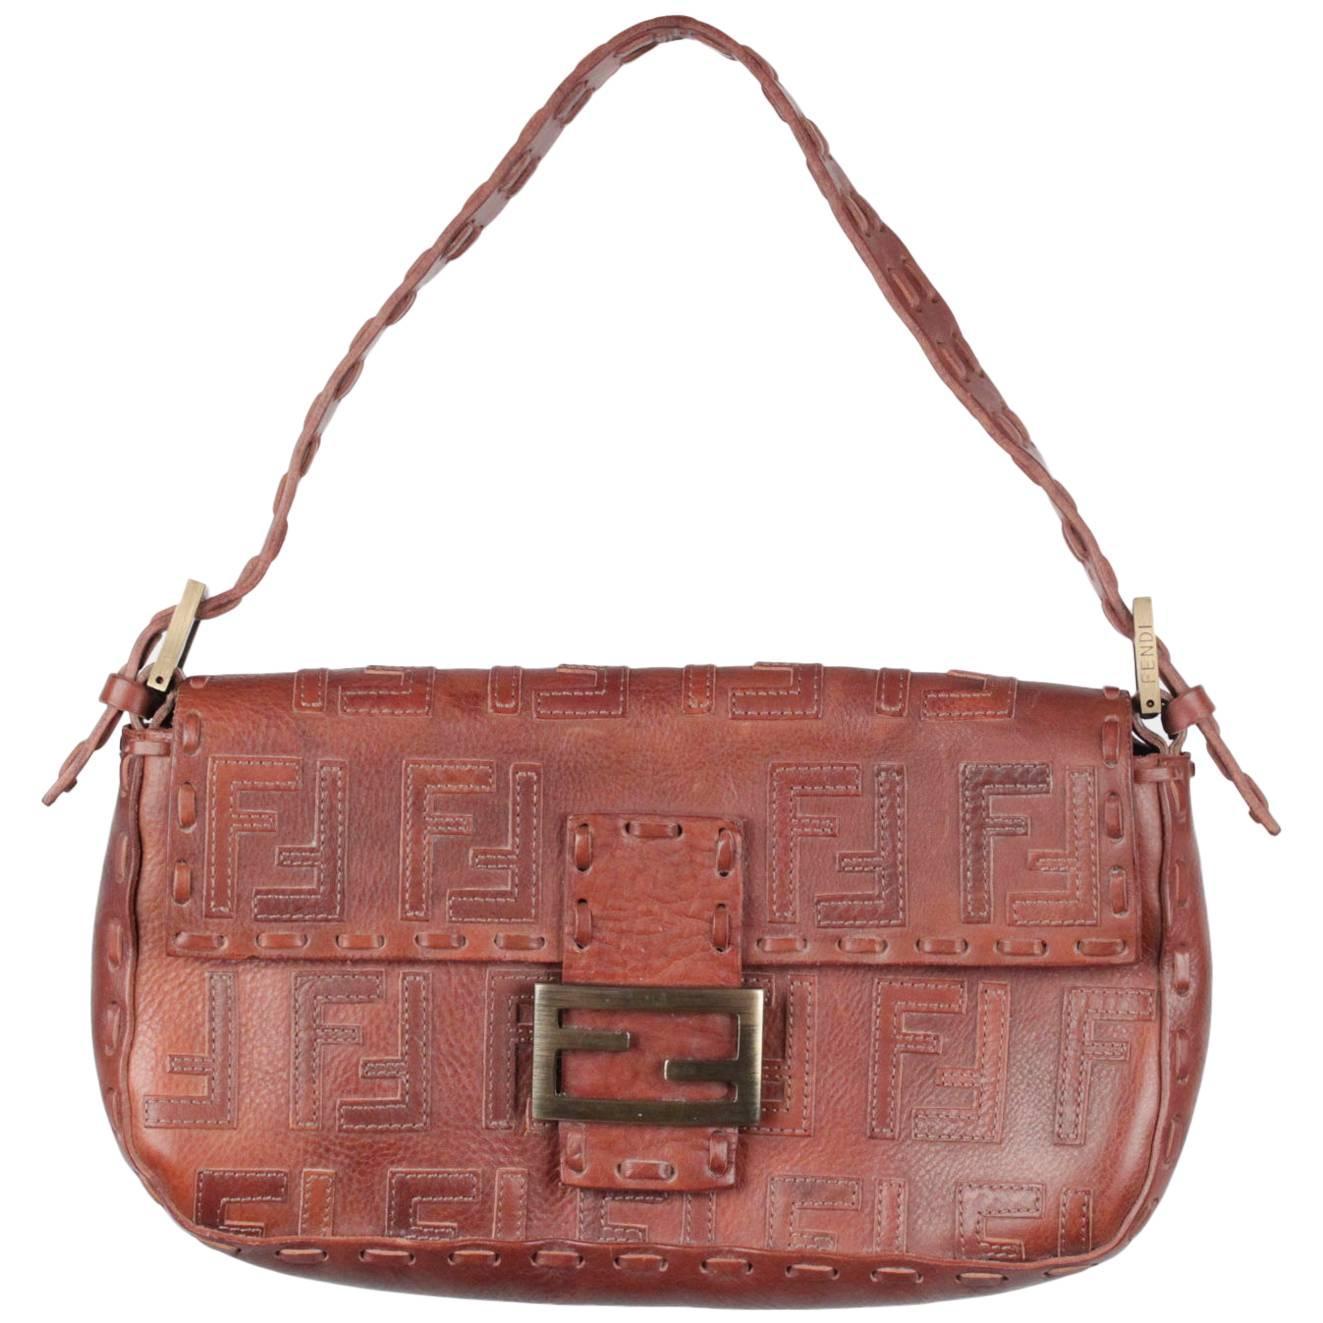 FENDI Brown Leather BAGUETTE BAG Shoulder Bag HANDBAG w/ Stitched FF LOGOS For Sale at 1stdibs